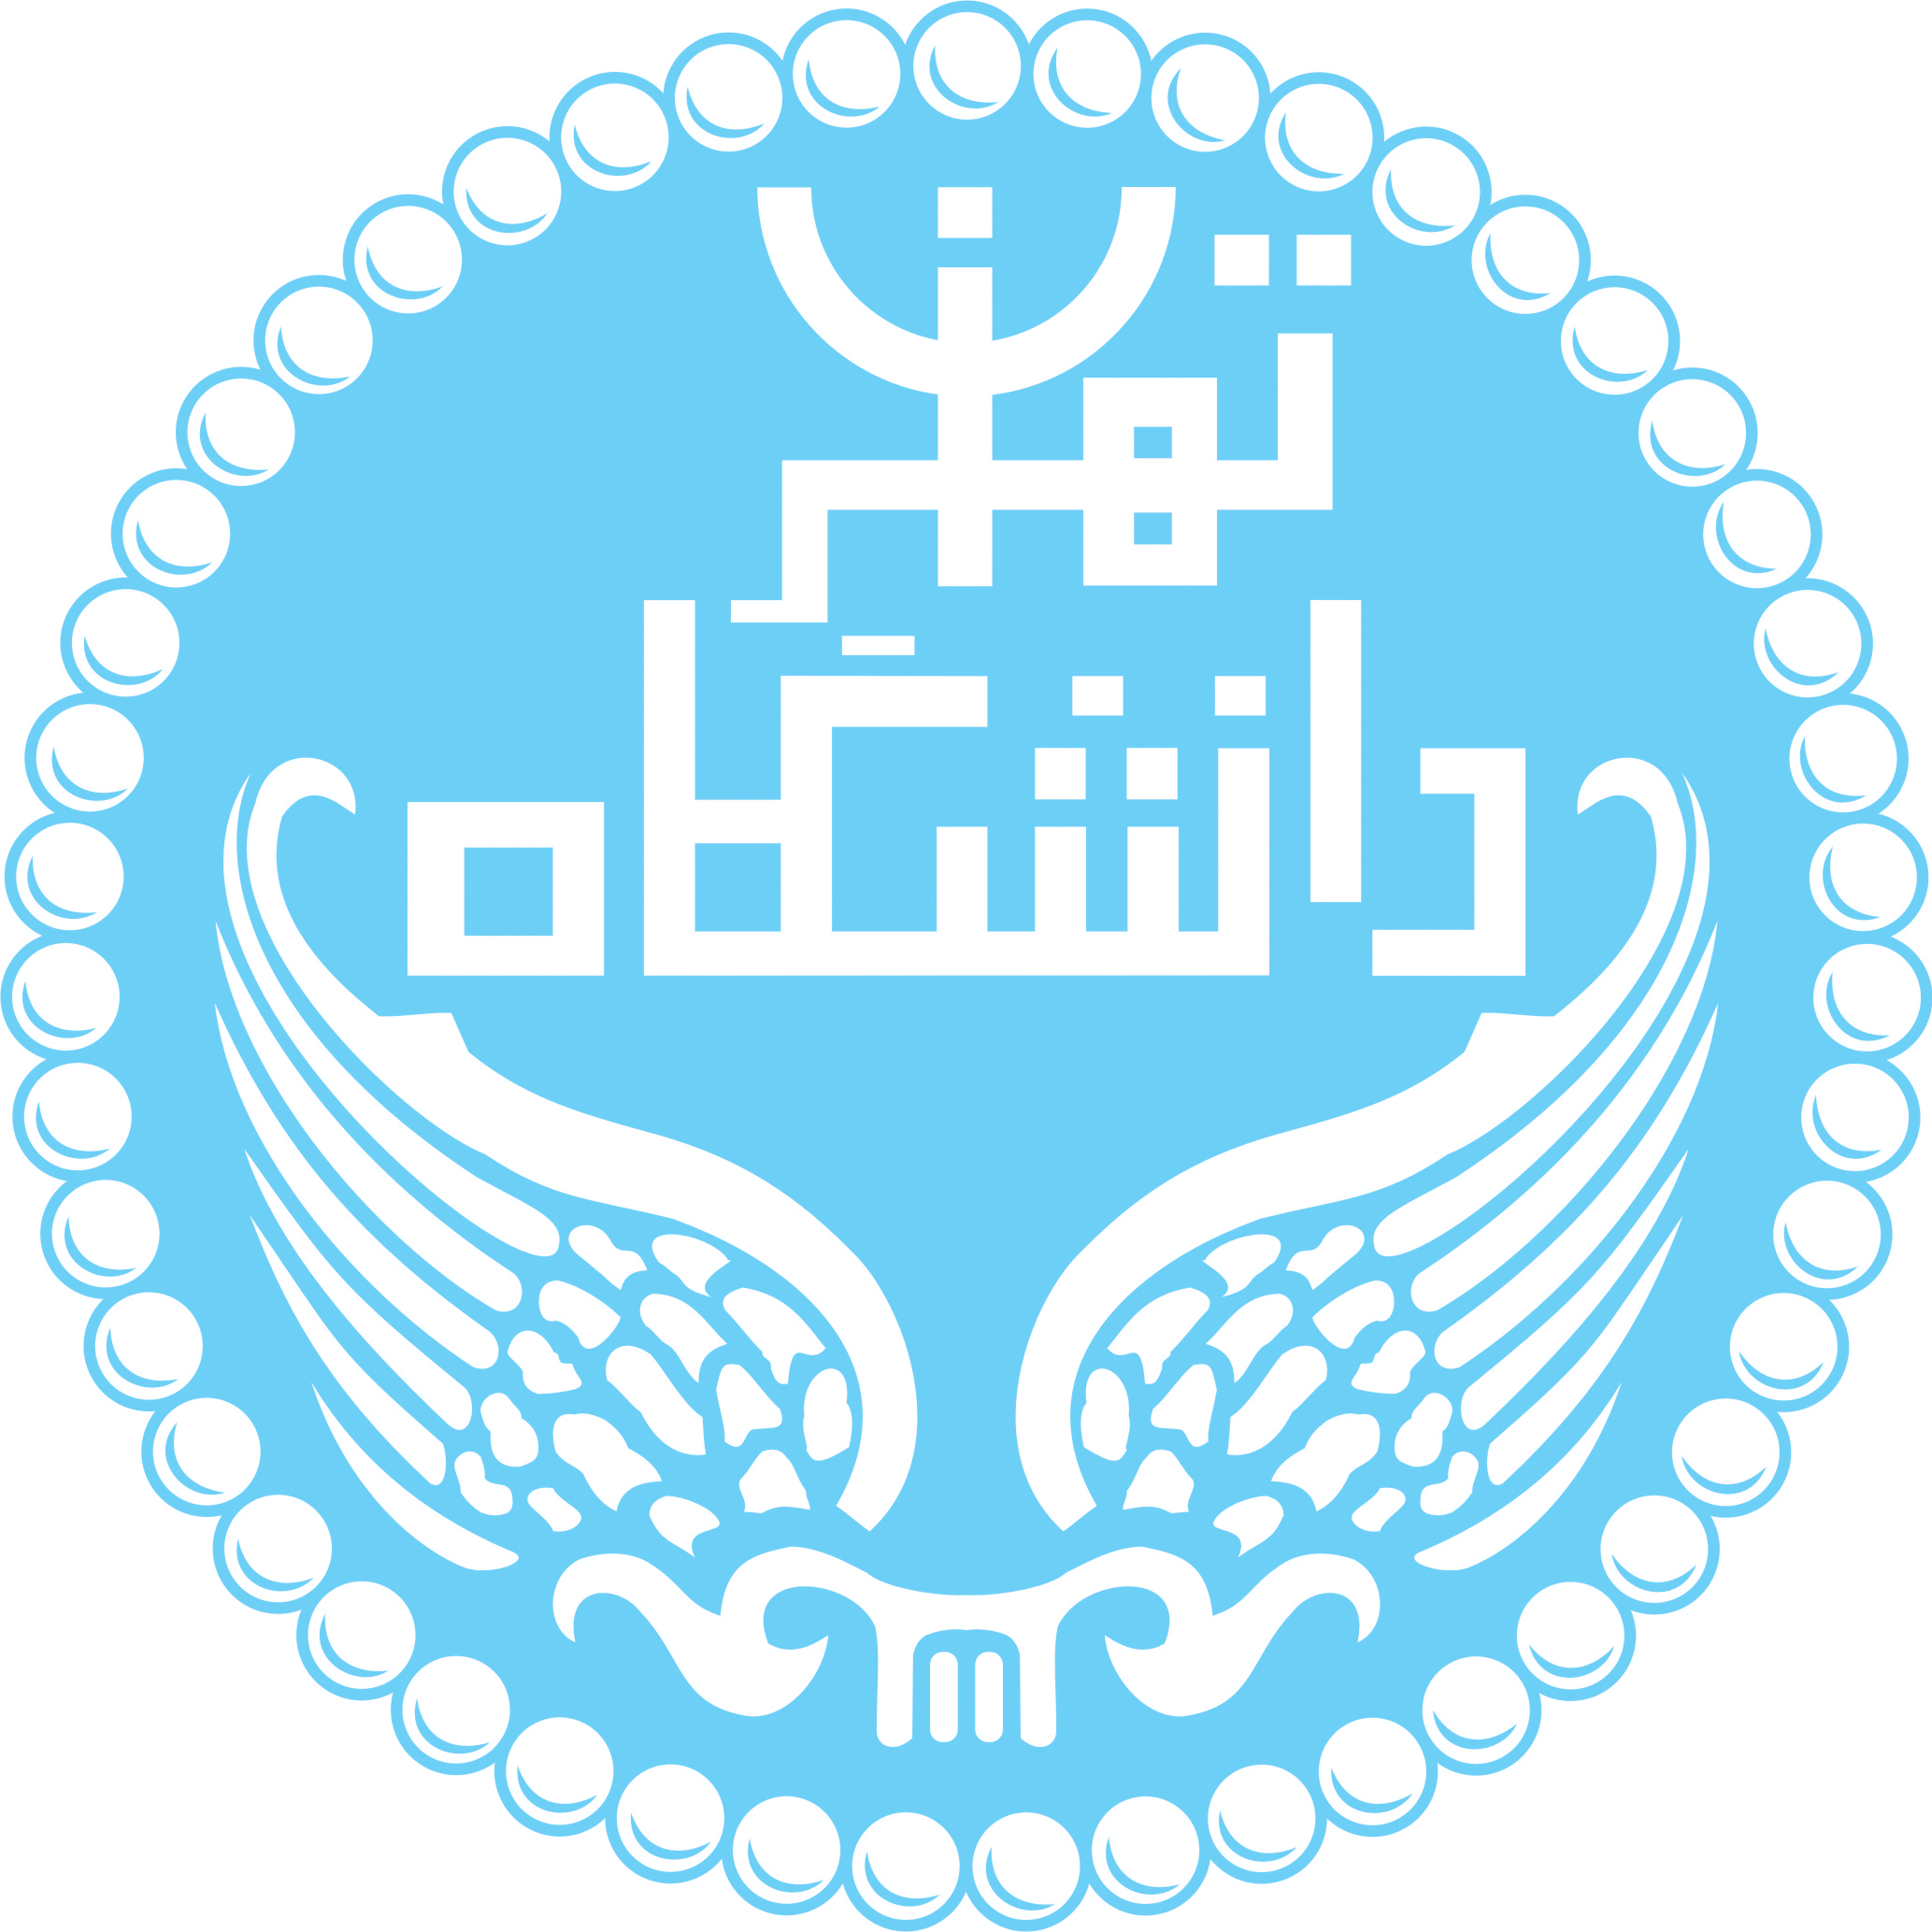 مرکز آموزشهای الکترونیک دانشگاه تهران و دانشکده فنی دانشگاه تهران